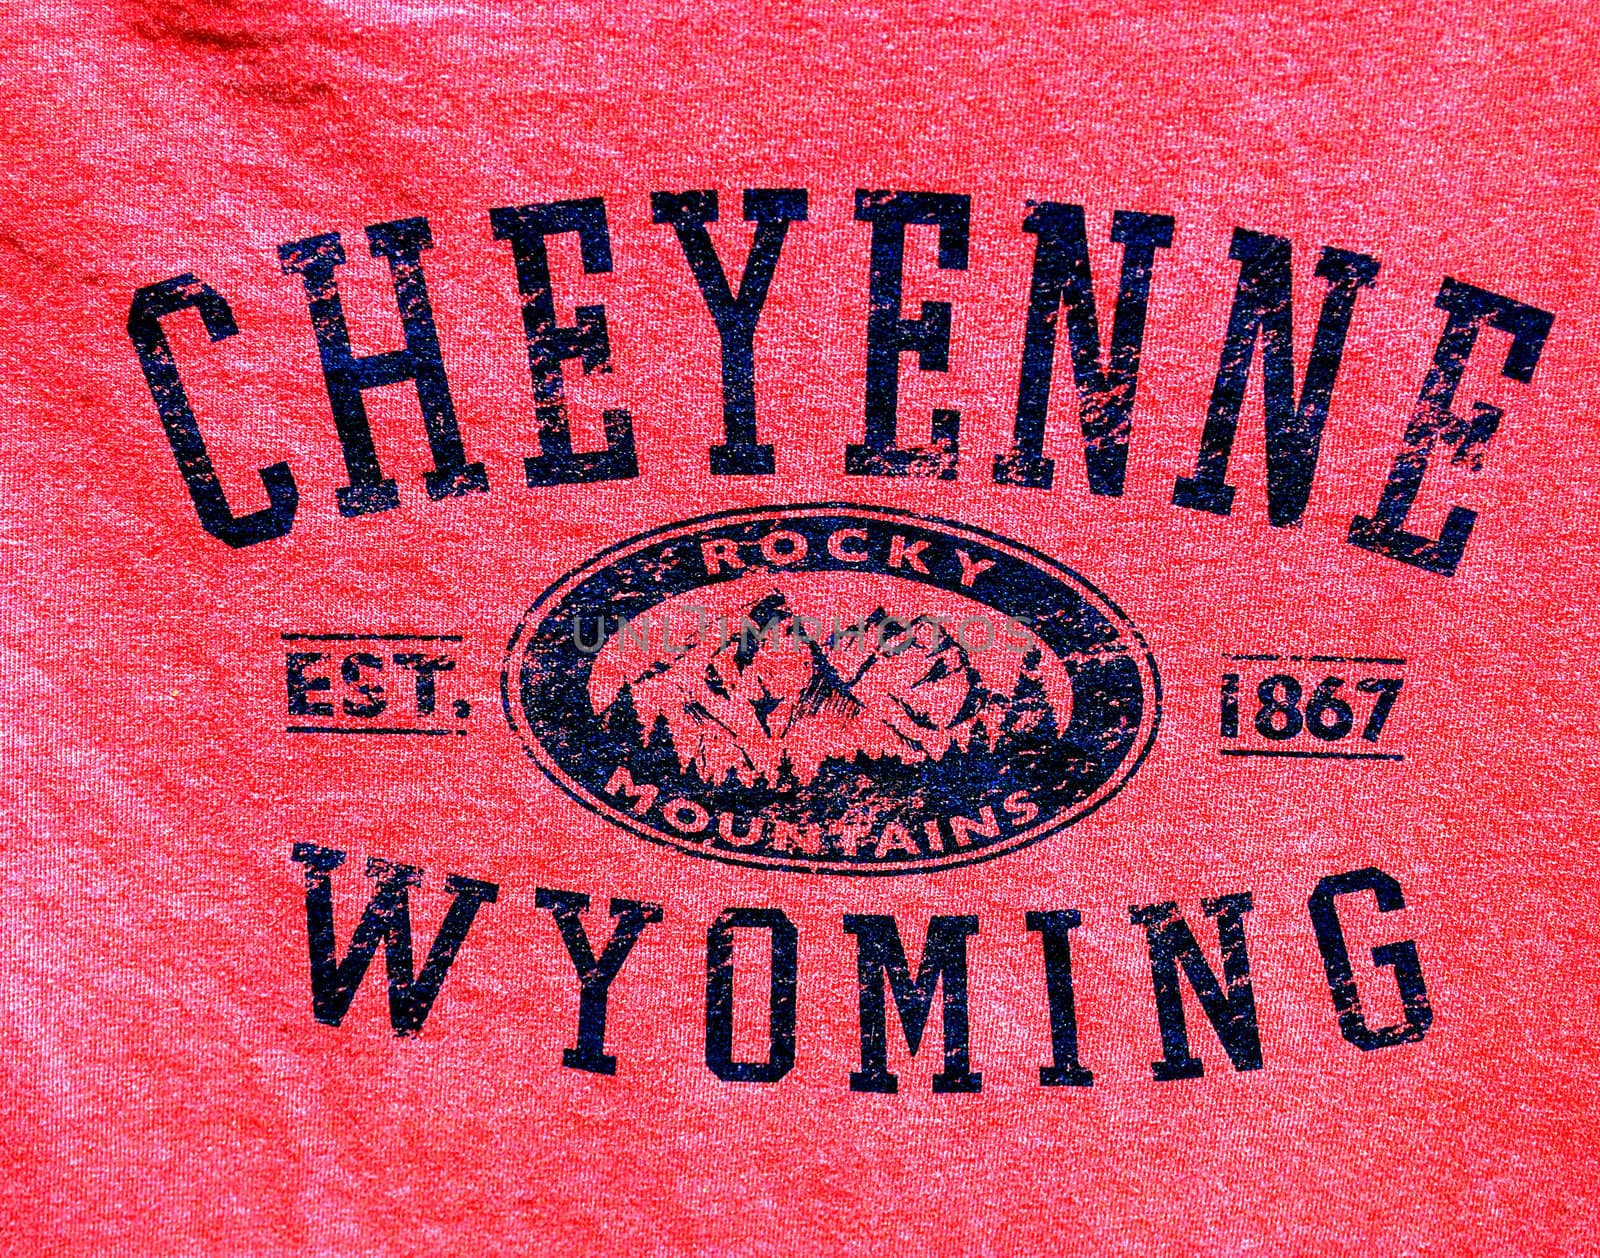 Cheyenne, Wyoming banner. by oscarcwilliams